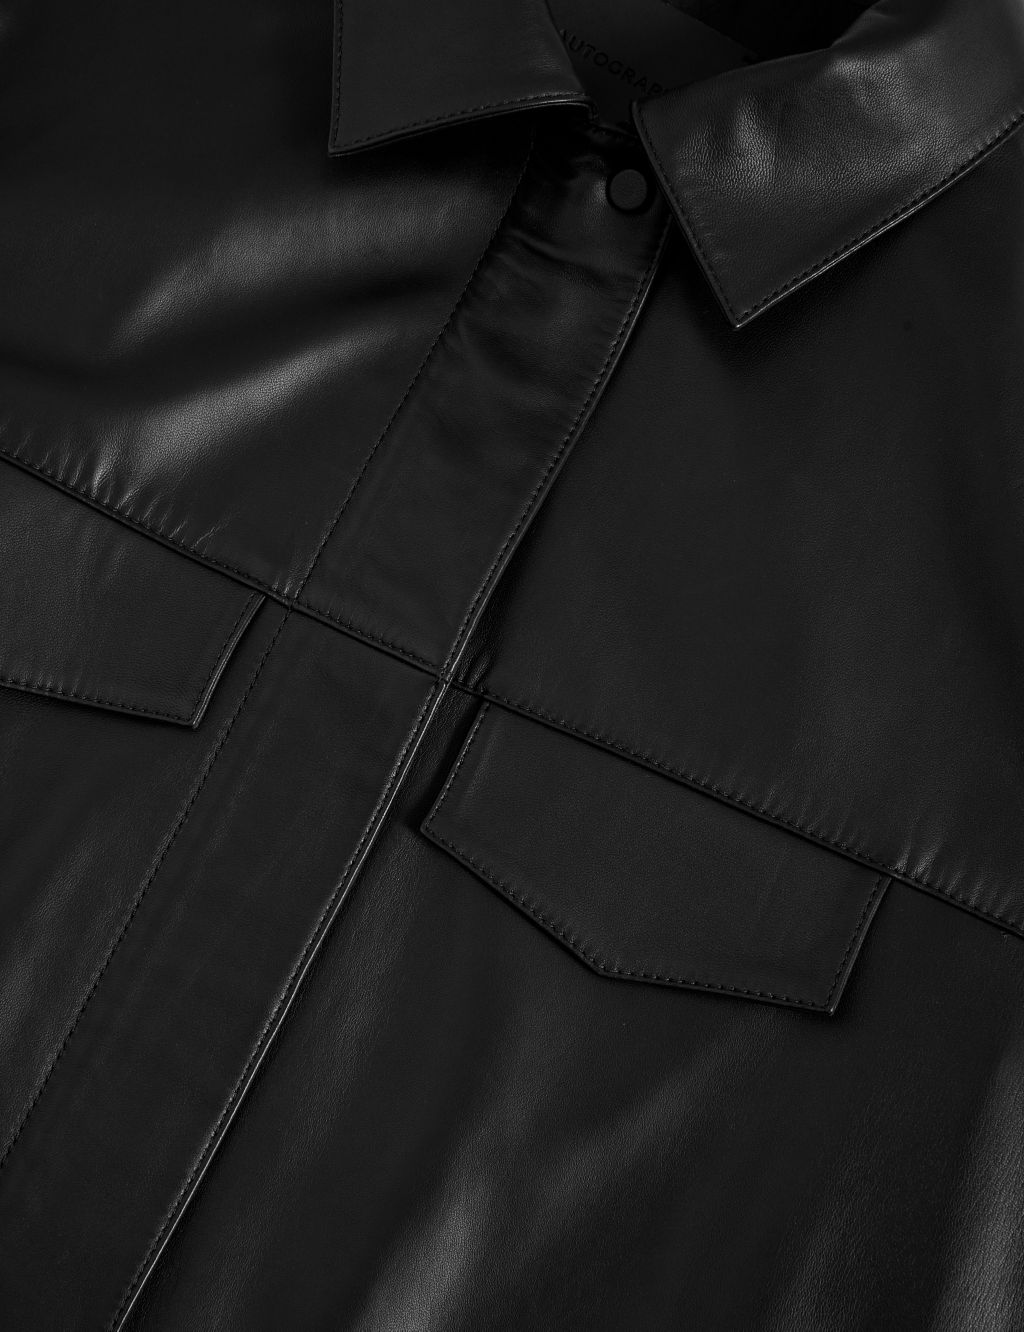 Leather Collared Utility Jacket image 2